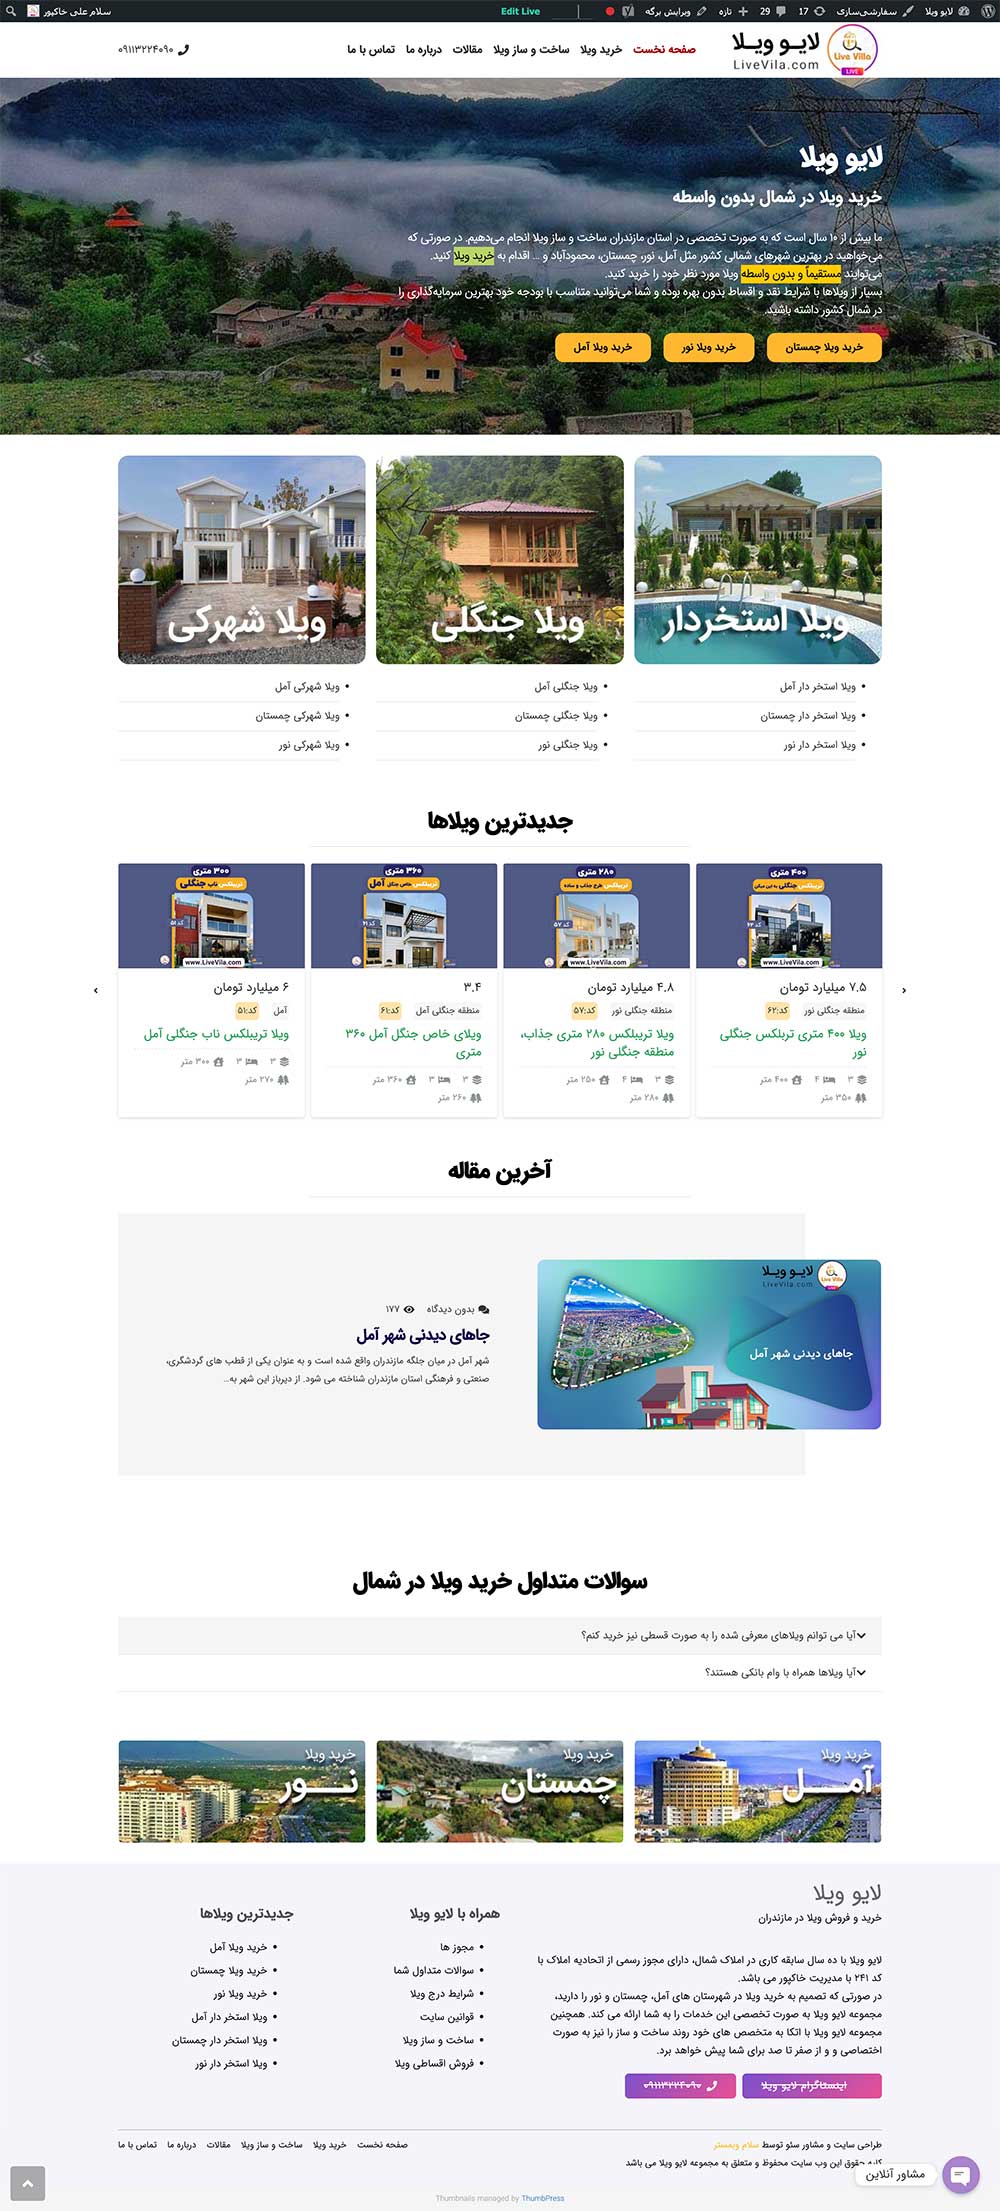 طراحی سایت املاک لایو ویلا توسط سلام وبمستر